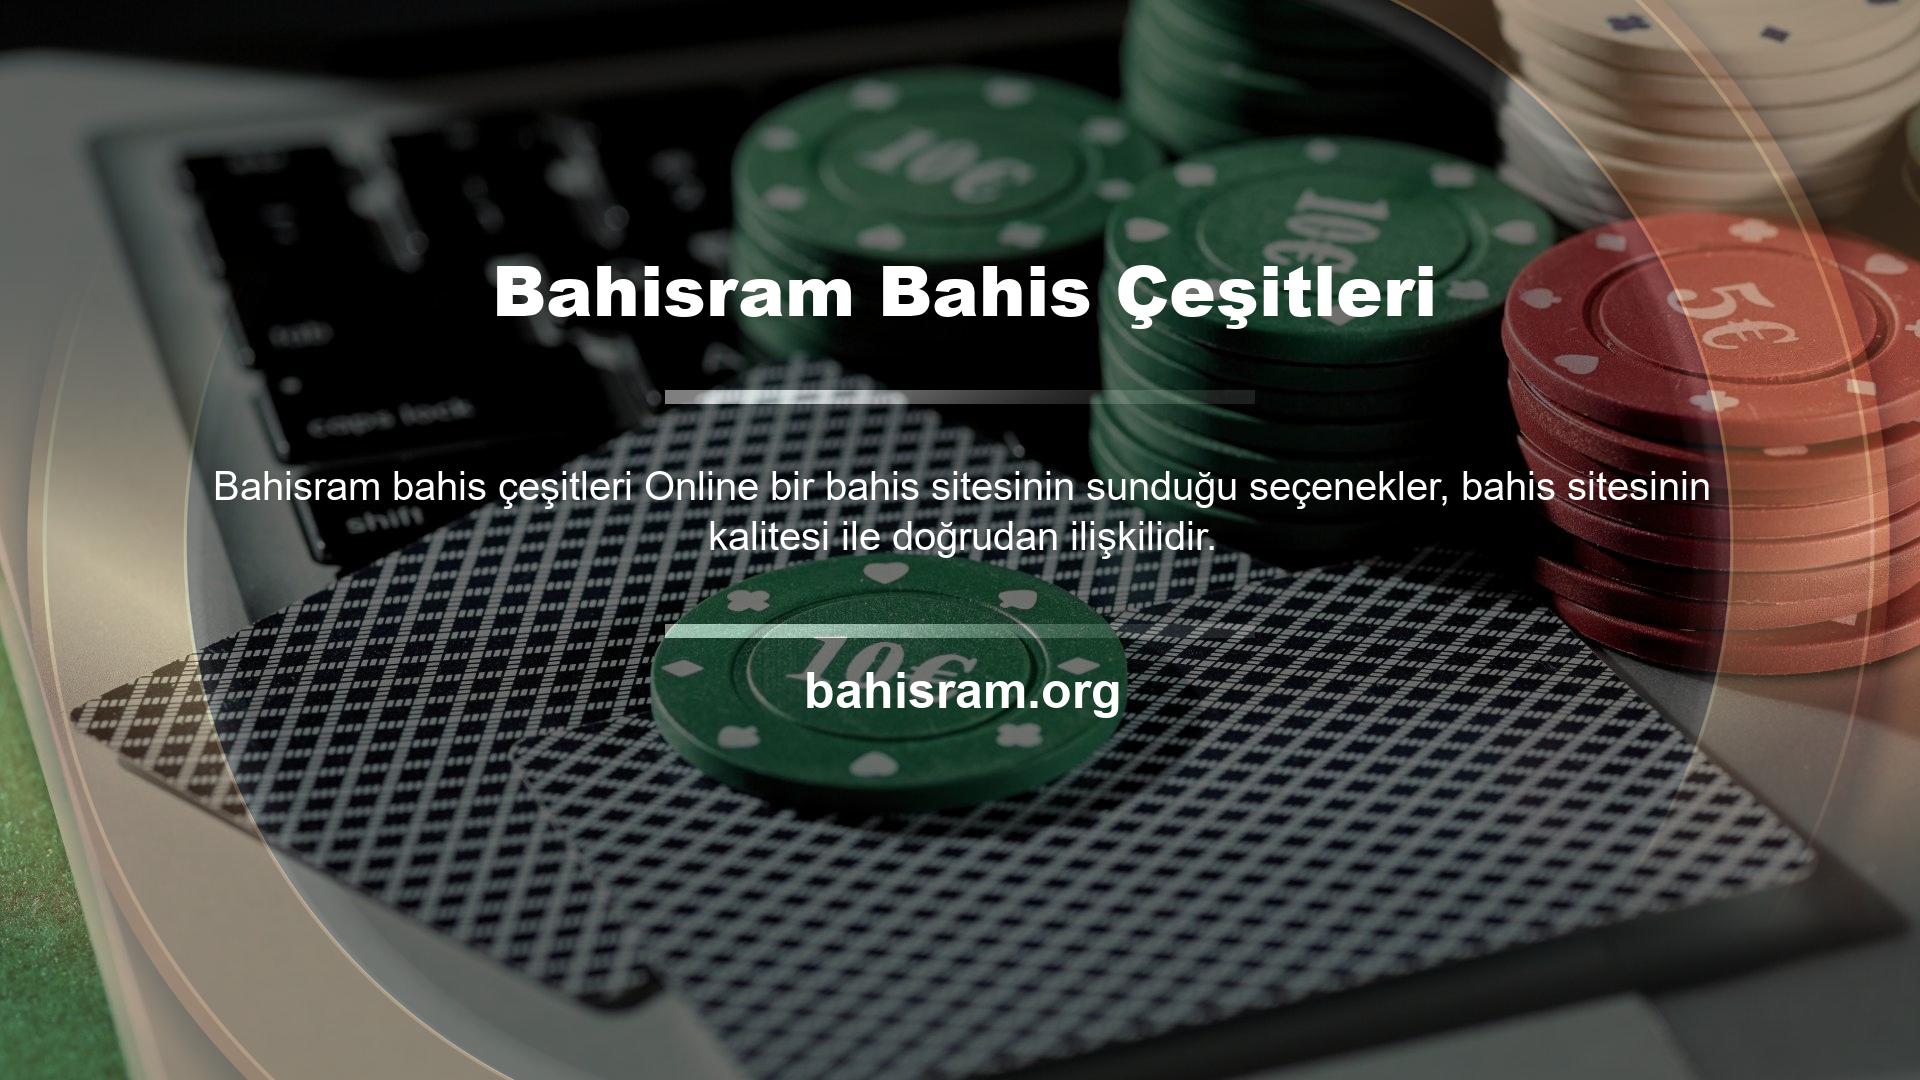 Bu konuda Bahisram web sitesi de çeşitli bahis seçenekleri sunmaktadır